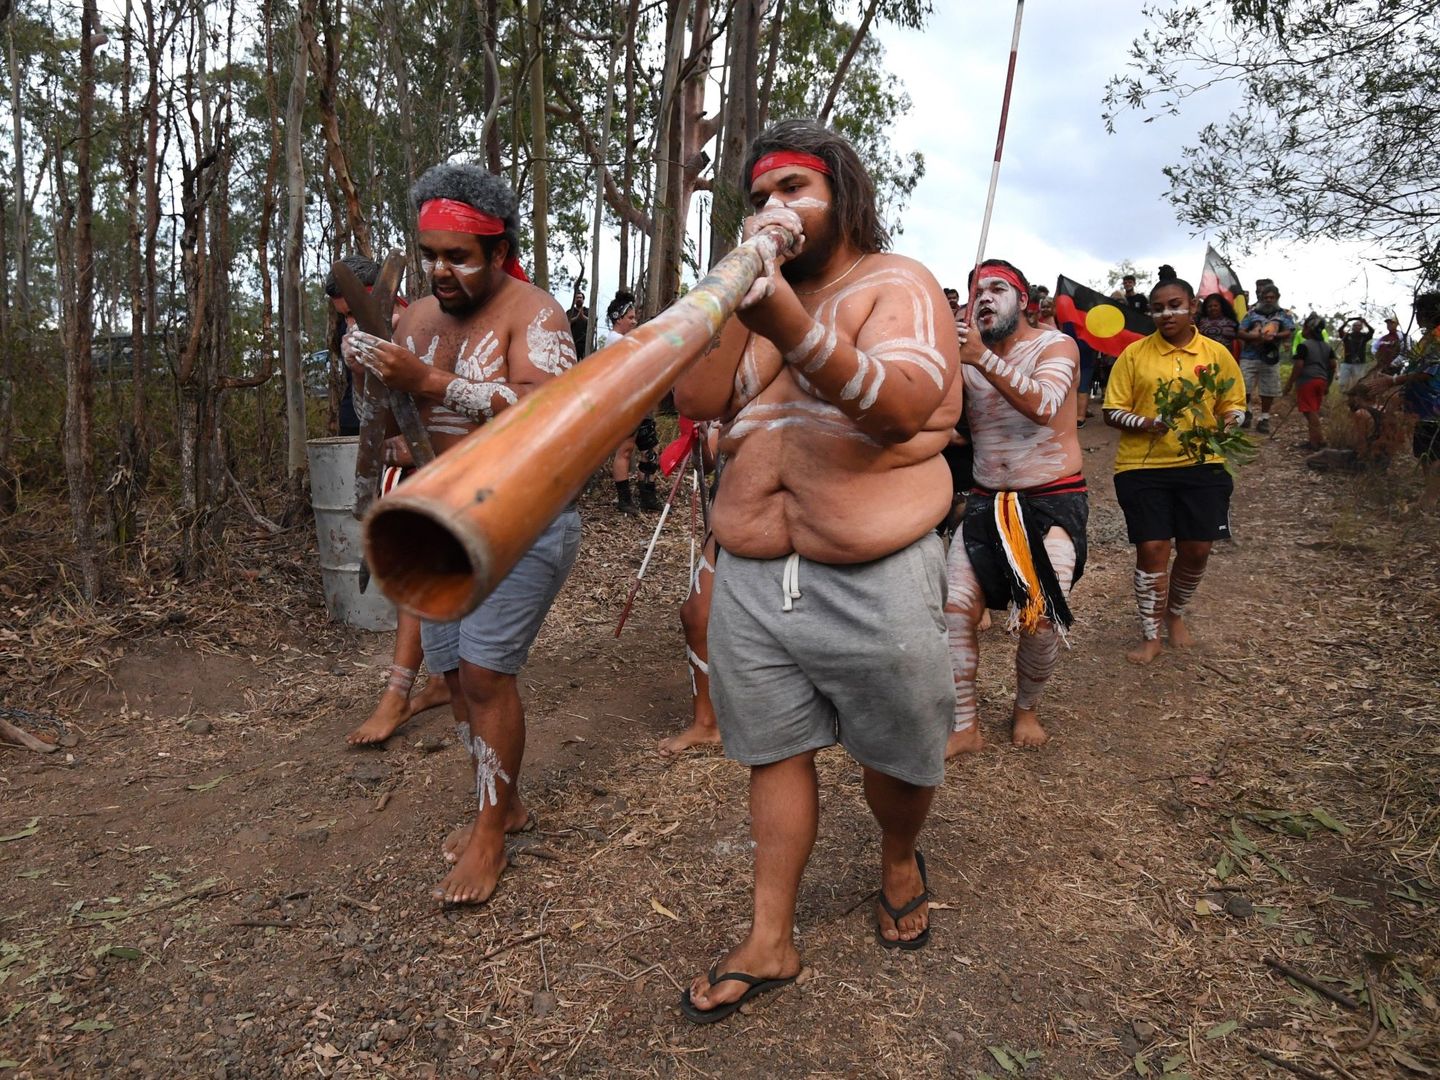 Varios aborígenes australianos protestan contra las construcciones cercanas al área en la que viven. (EFE)